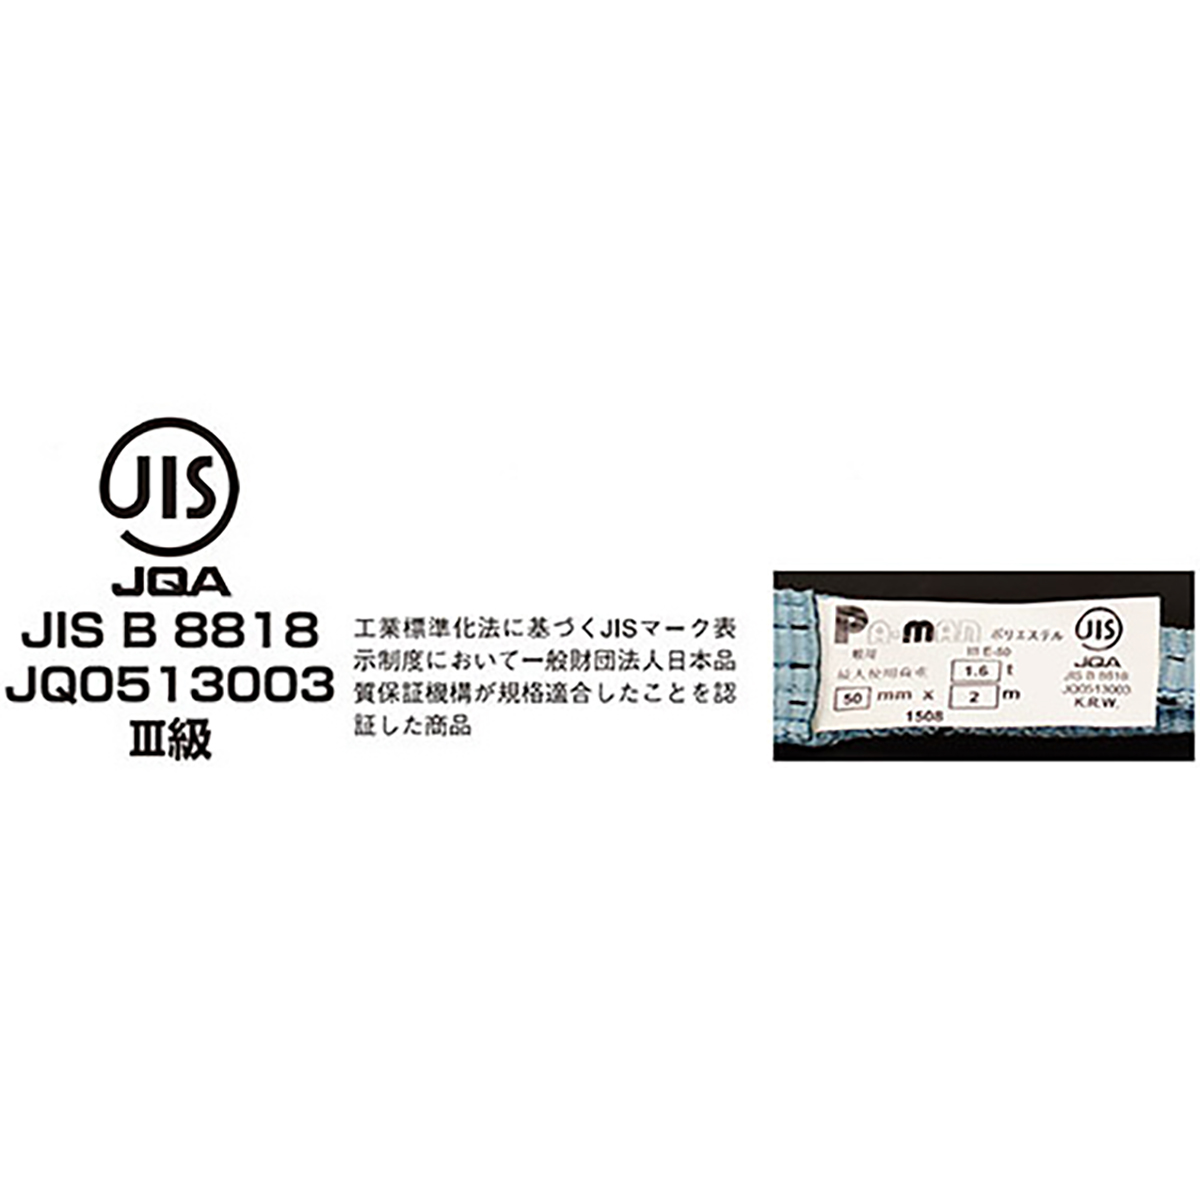 ポリベルトスリング JIS III級 ソフト面付 巾25mm 2m 1本